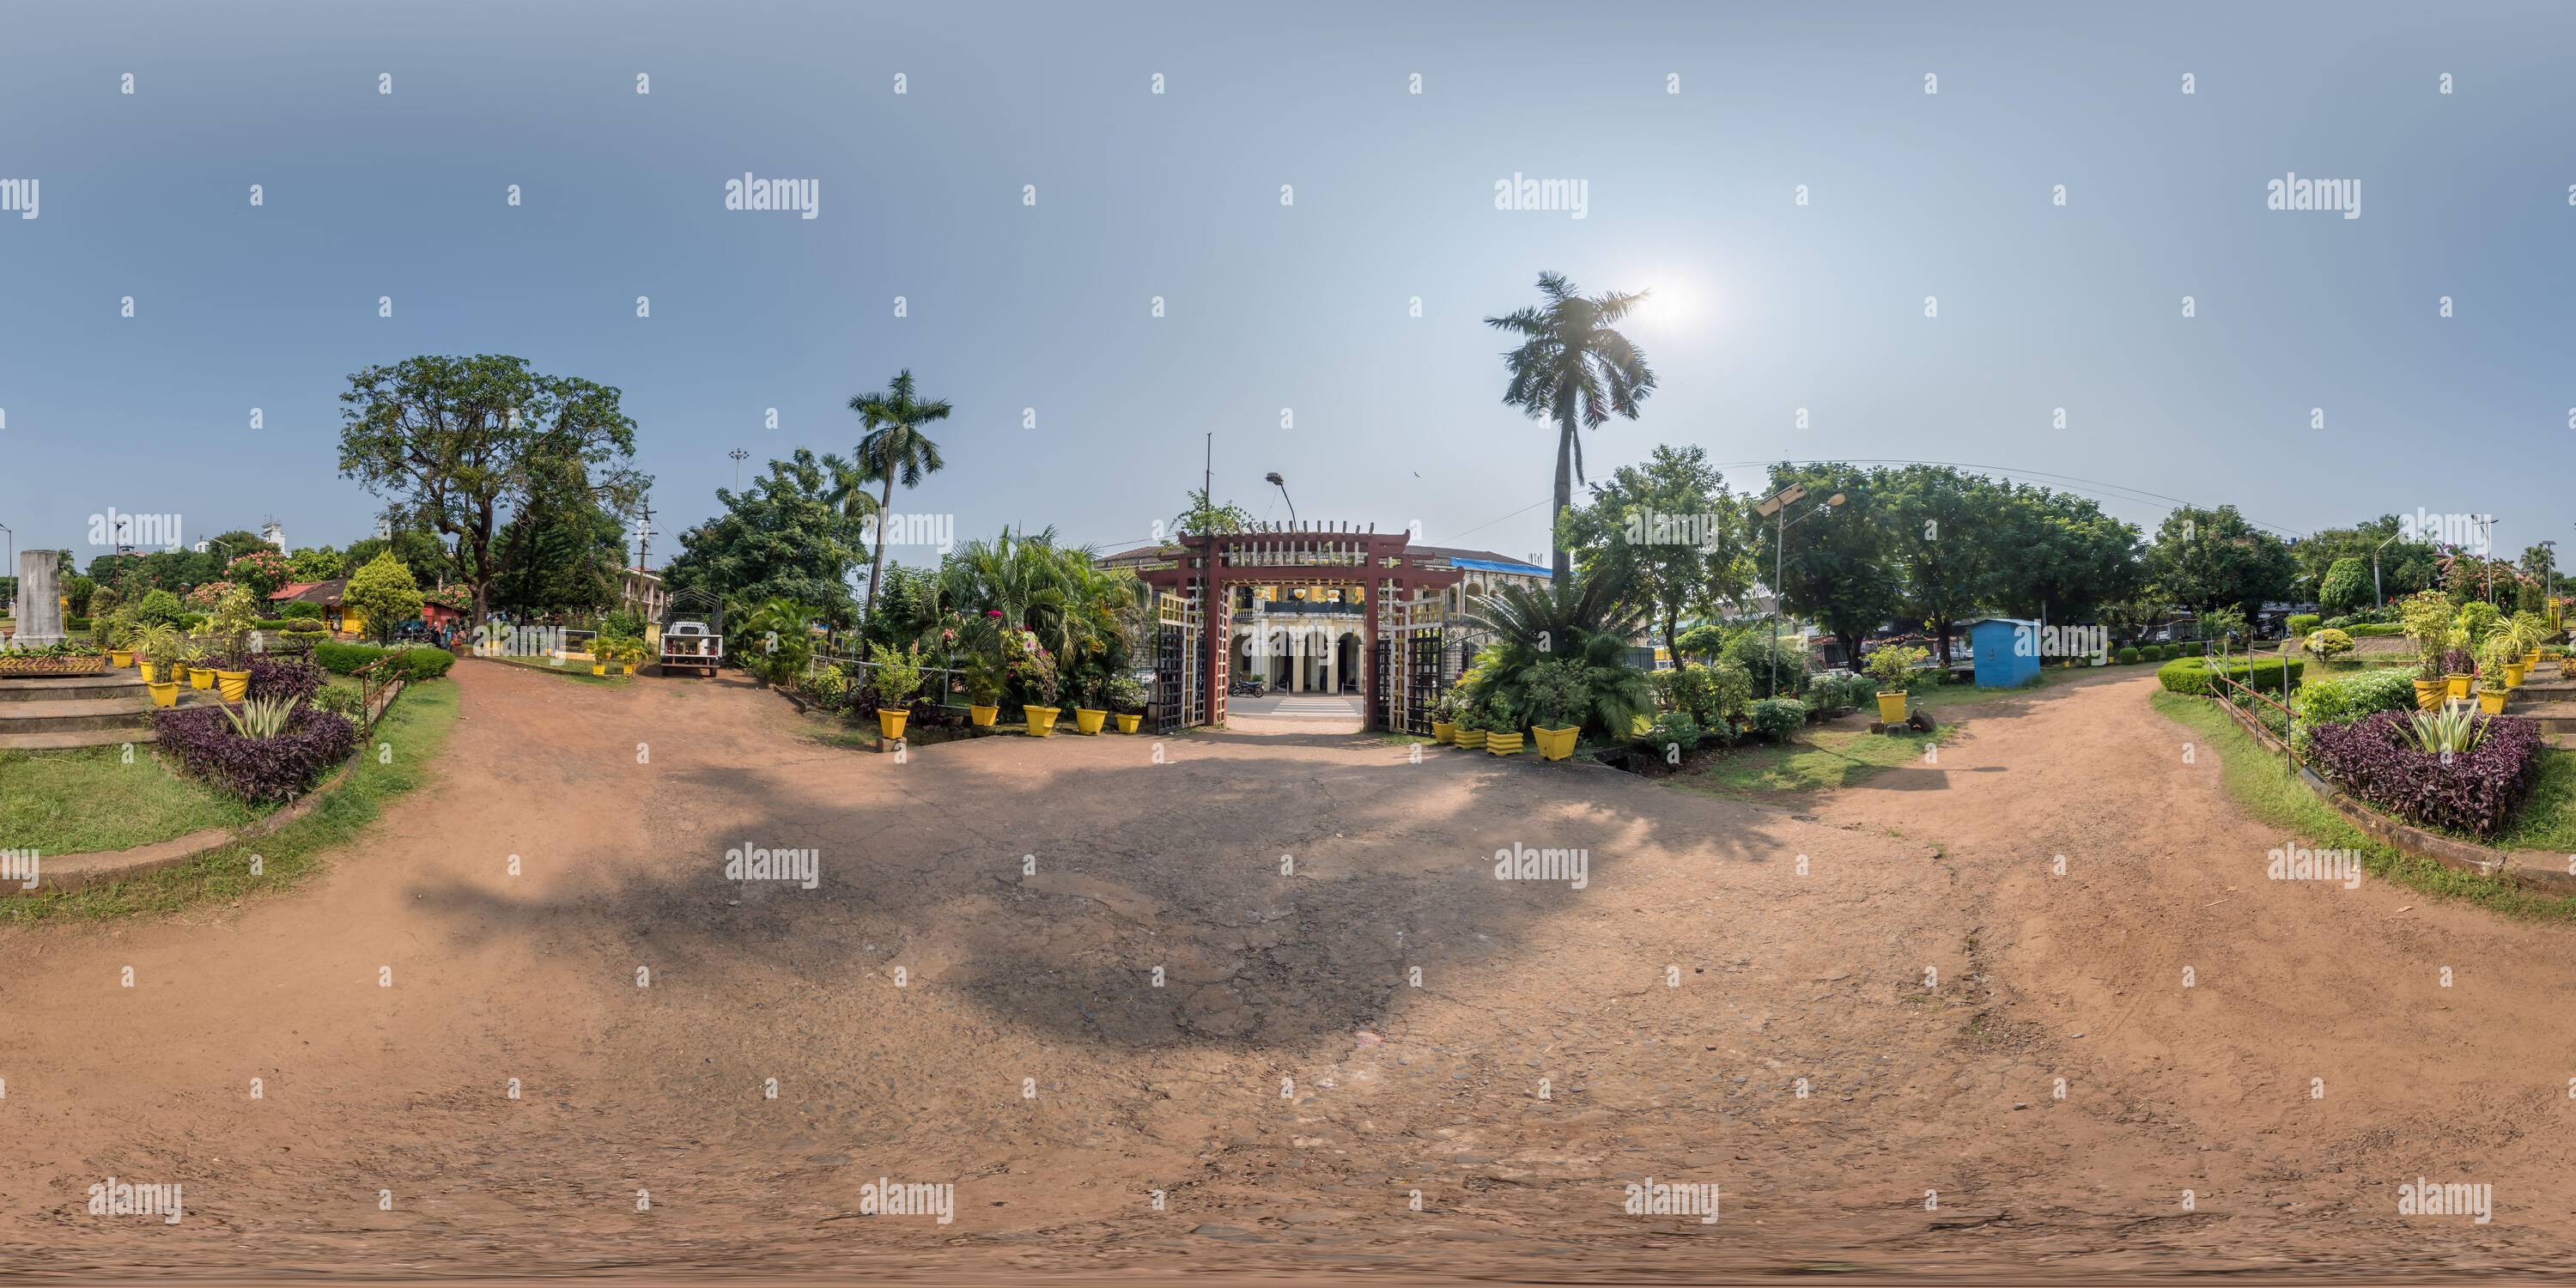 Vue panoramique à 360° de parc zone verte près de la porte dans la ville indienne en pleine sphérique 360 hdri panorama sans couture en projection équirectangulaire, panorama, contenu VR,